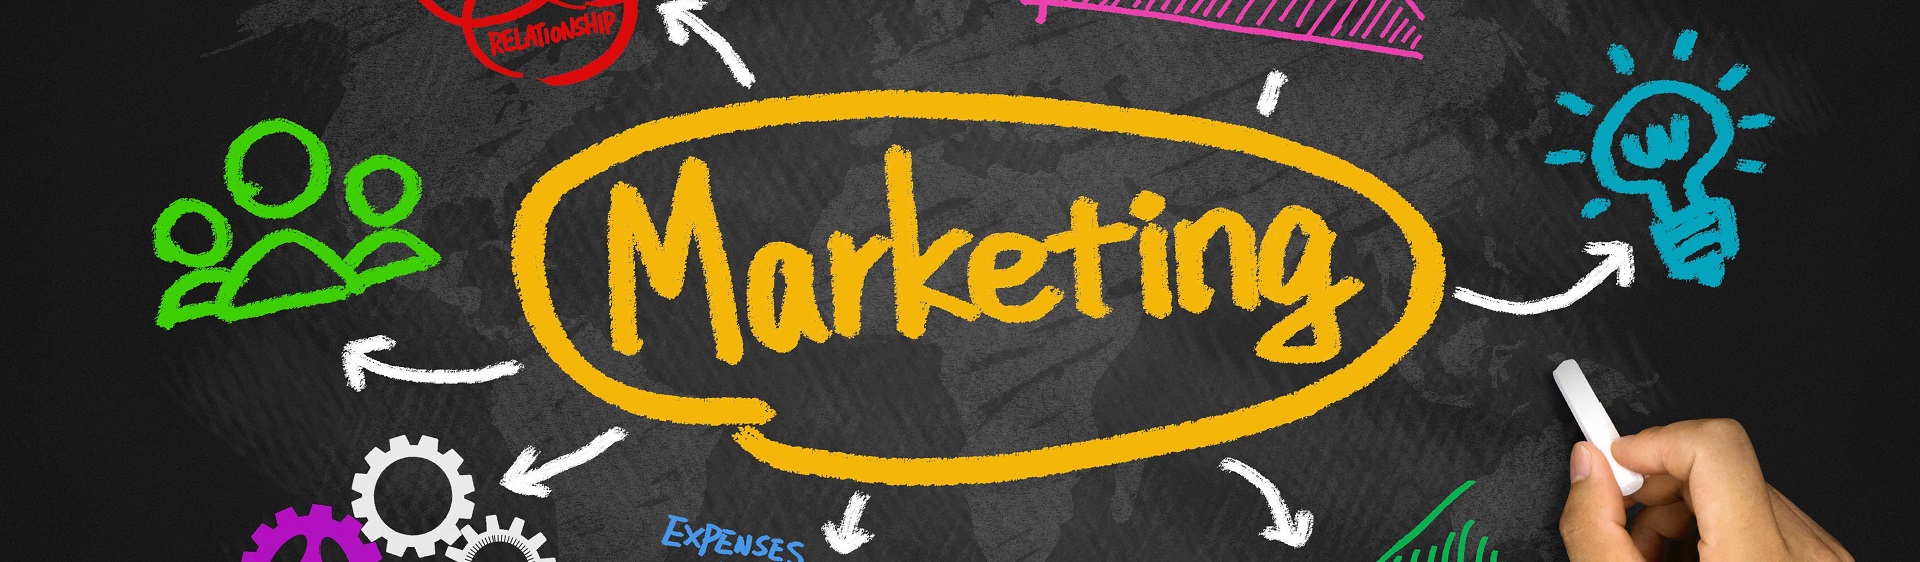 Đón đầu xu hướng marketing online năm 2015